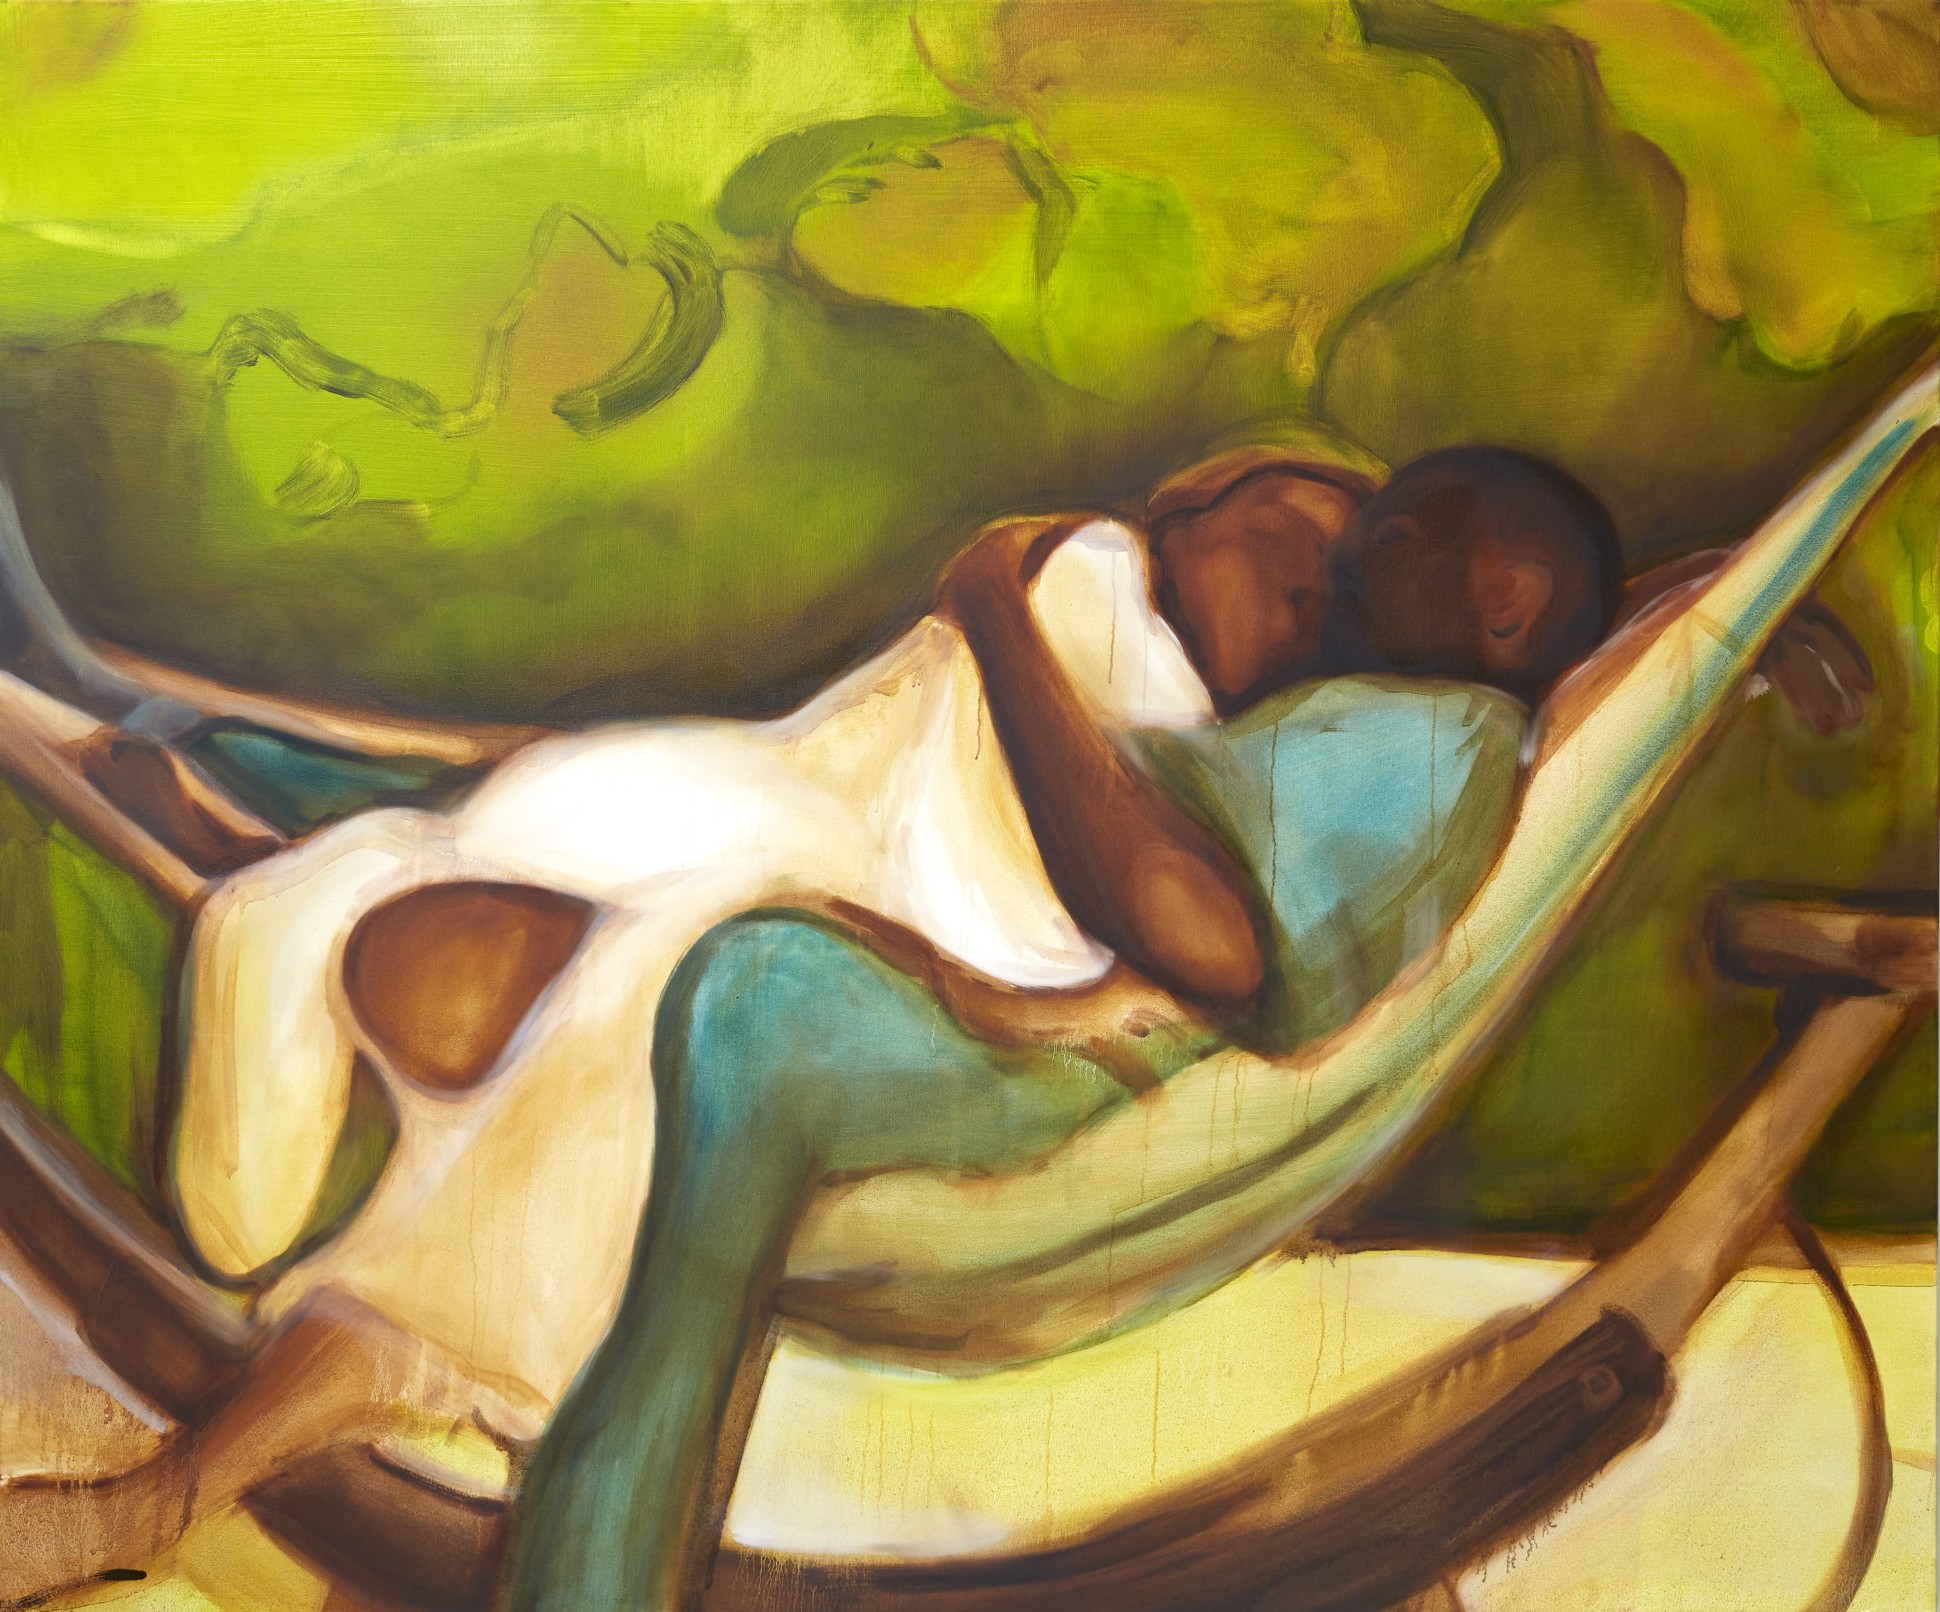 The Hug (Steady Love), 2021 Oil on canvas 150 x 180 cm. / 59 x 71 in.